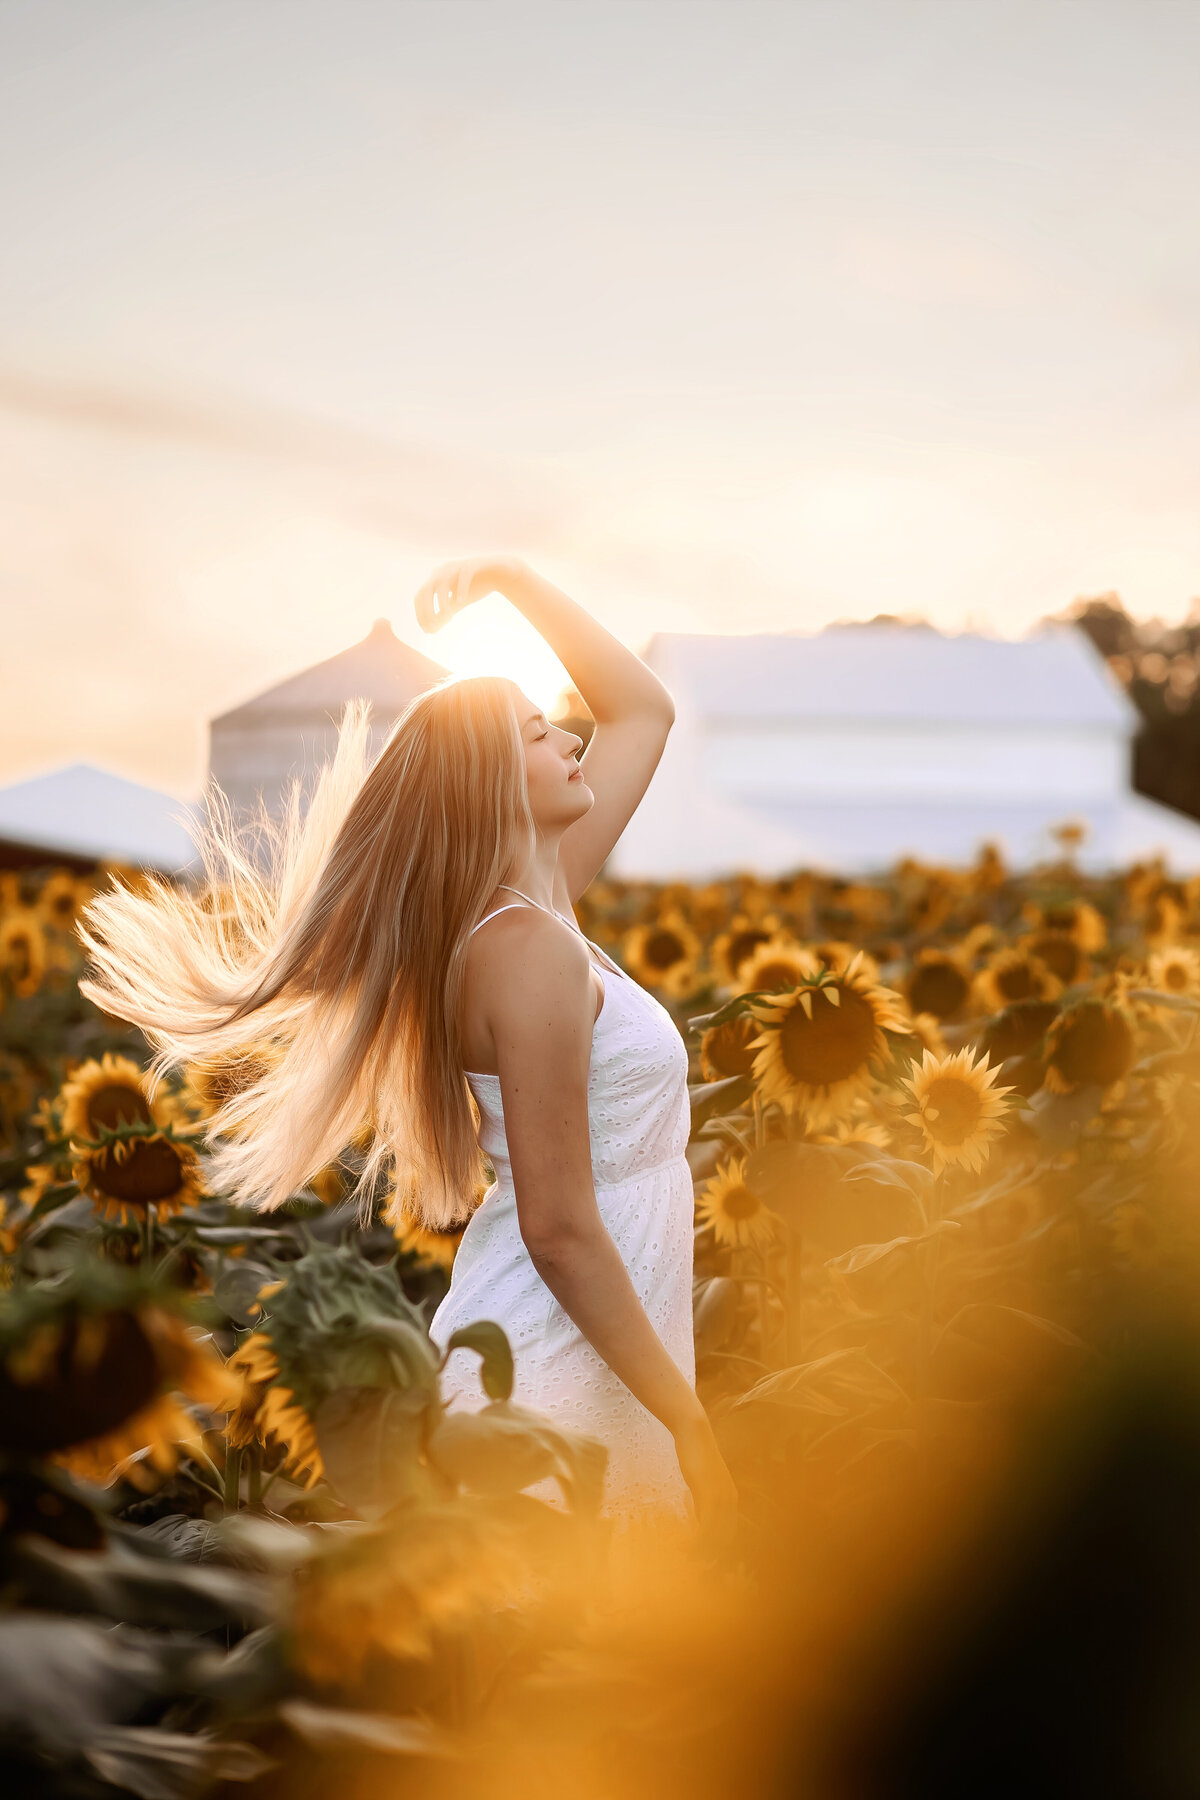 senior pictures in sunflowers. massillon ohio